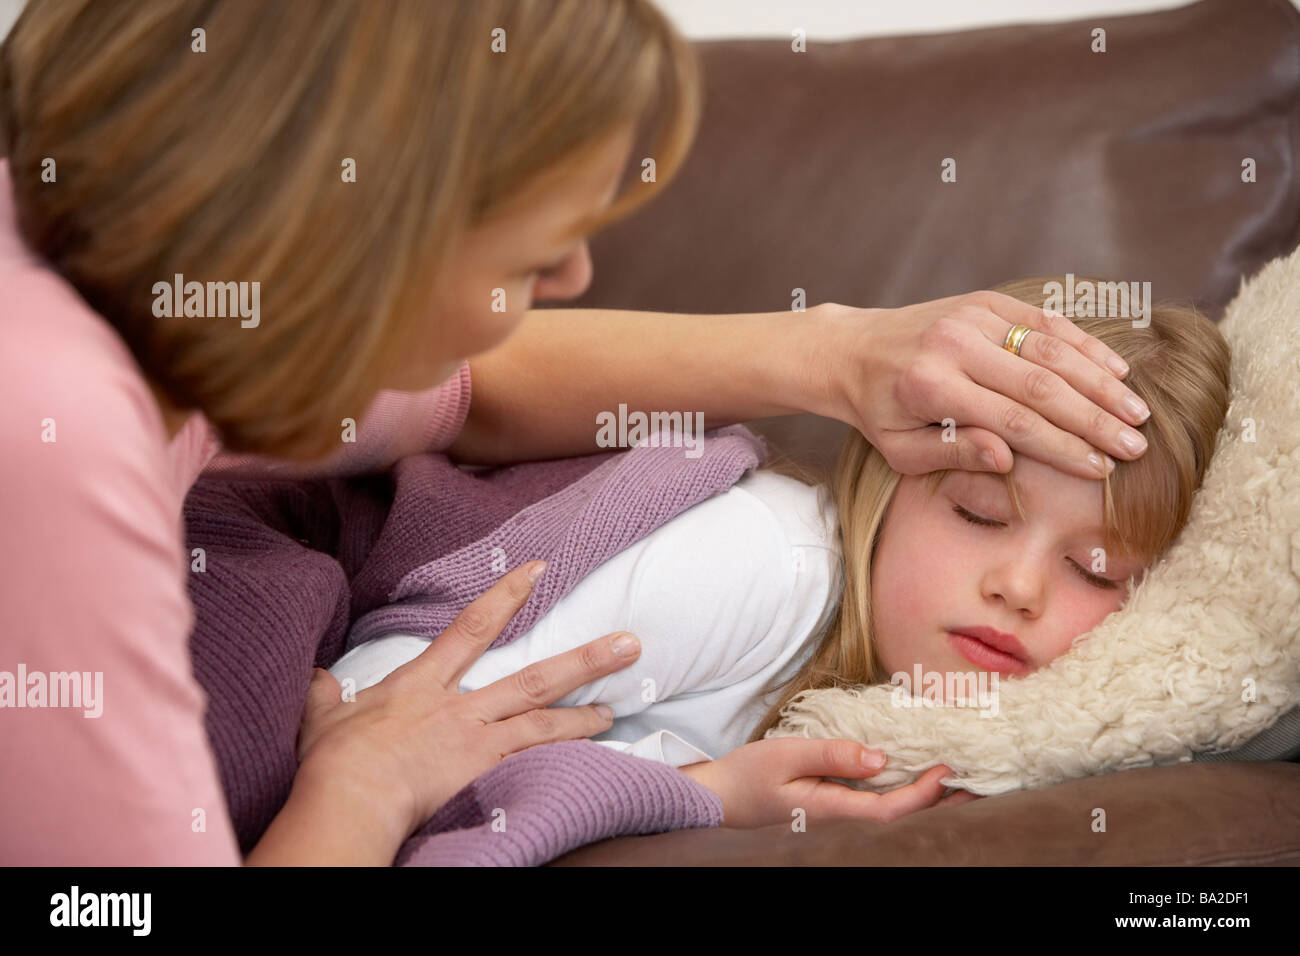 La madre toma temperatura de hija enferma Foto de stock